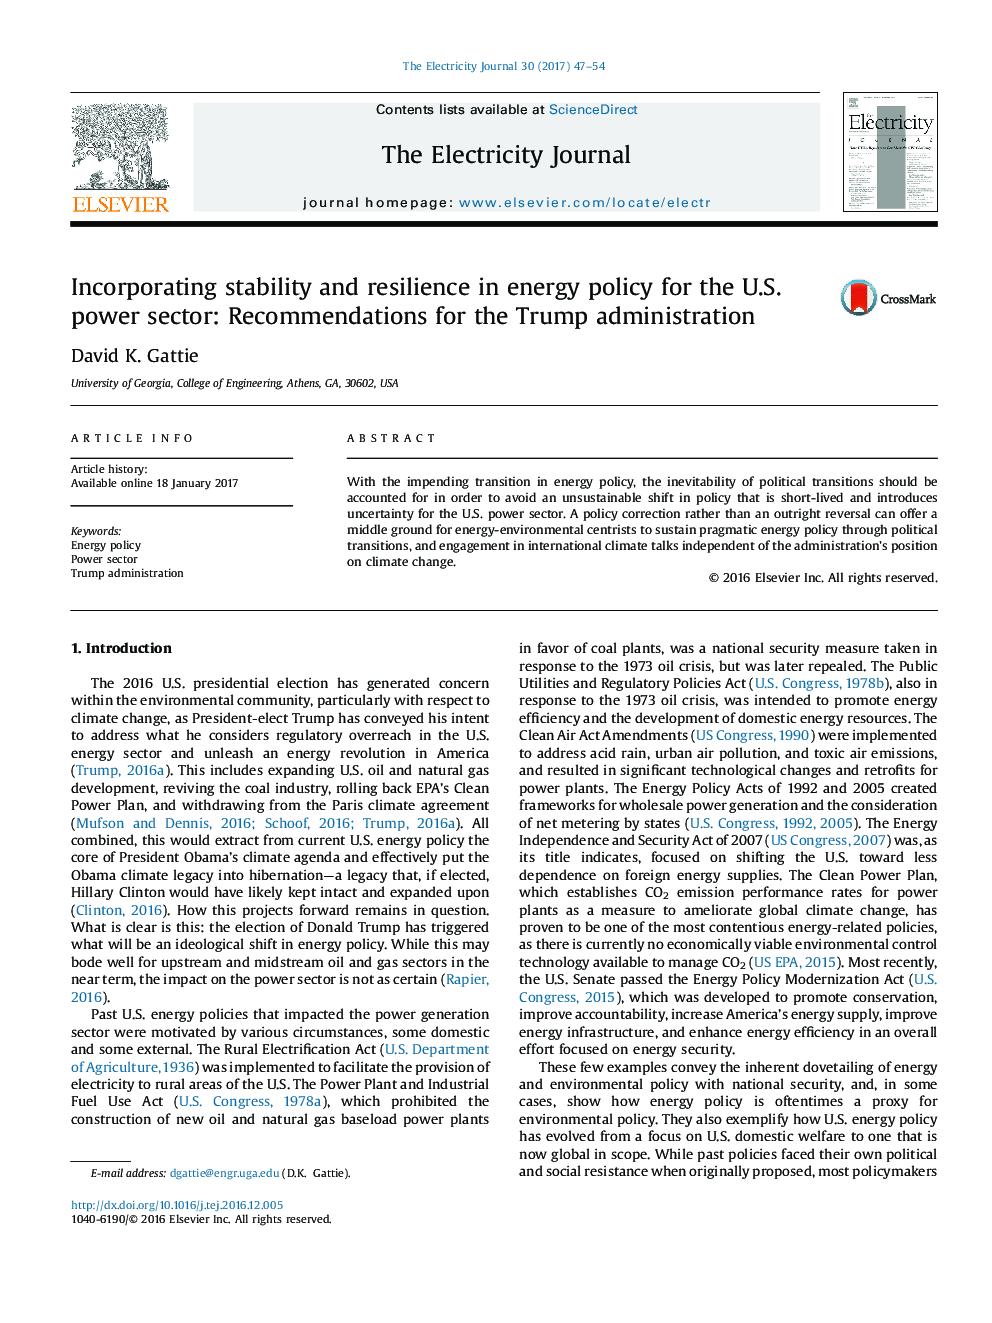 ترکیب ثبات و انعطاف پذیری در سیاست انرژی برای بخش برق ایالات متحده: توصیه هایی برای دولت ترامپ